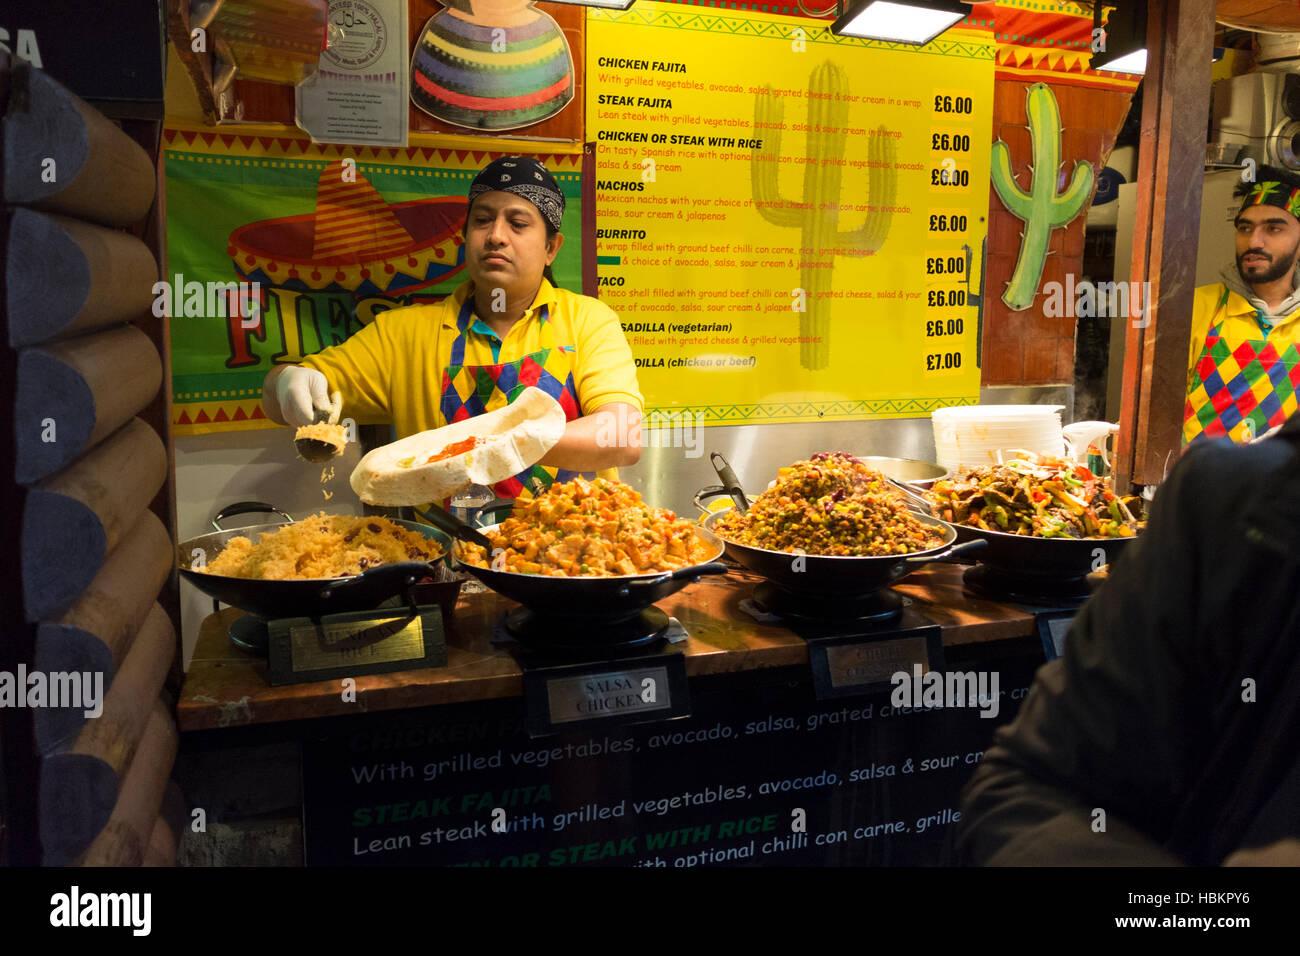 Comida mexicana en el mercado de alimentos Foto de stock